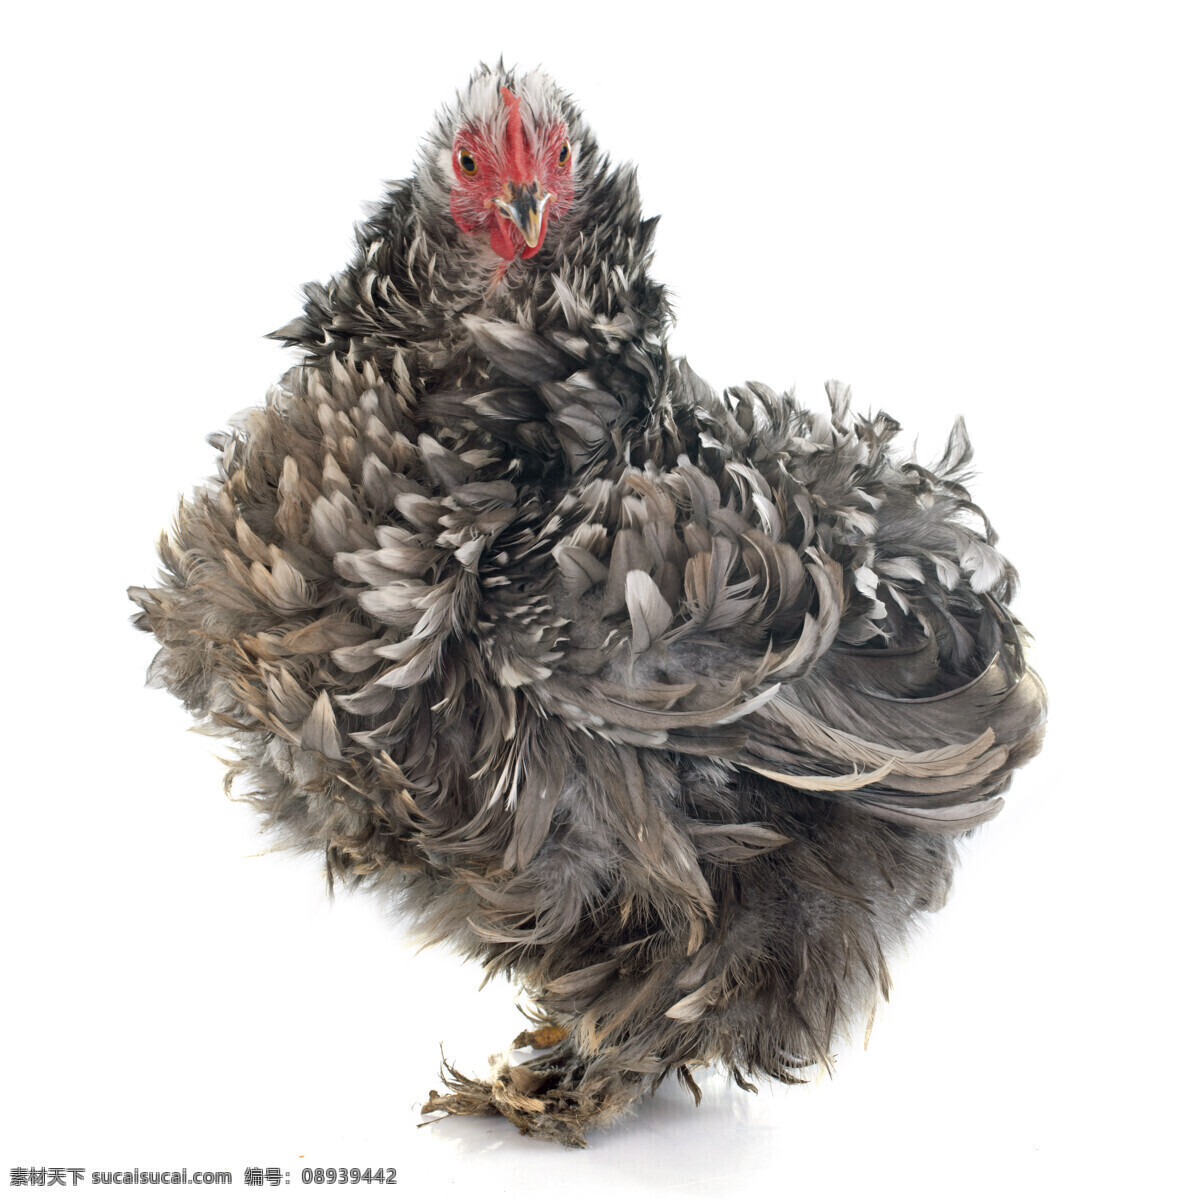 羽毛 卷曲 母鸡 家禽 动物世界 动物摄影 陆地动物 生物世界